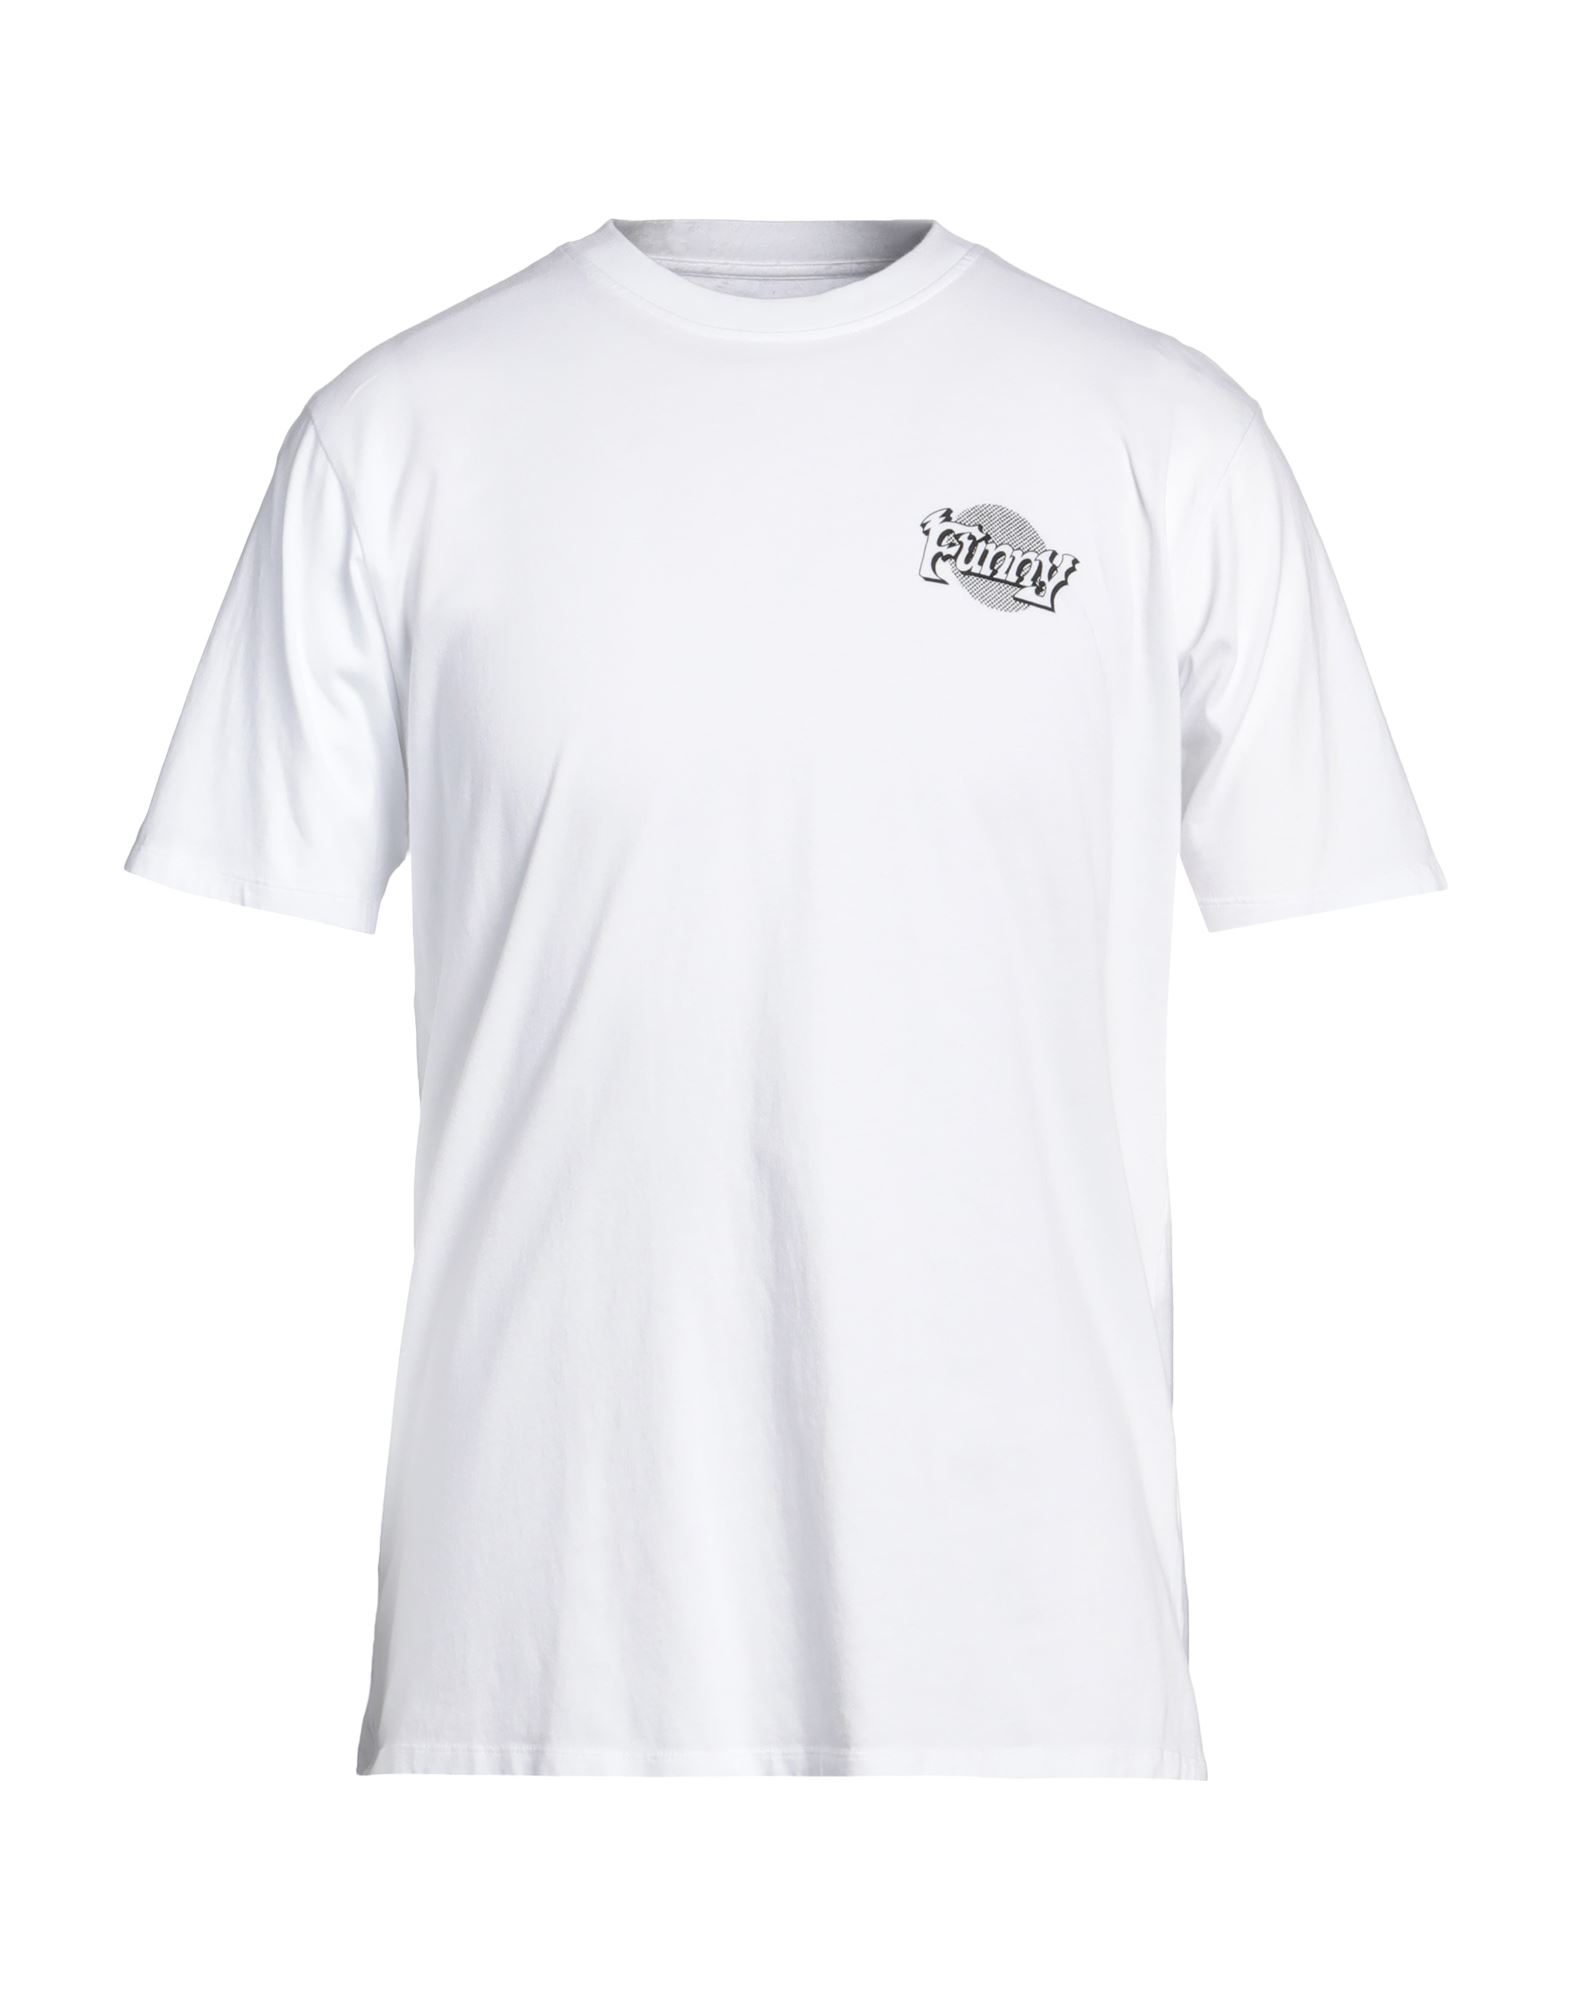 EDWIN T-shirts Herren Weiß von EDWIN